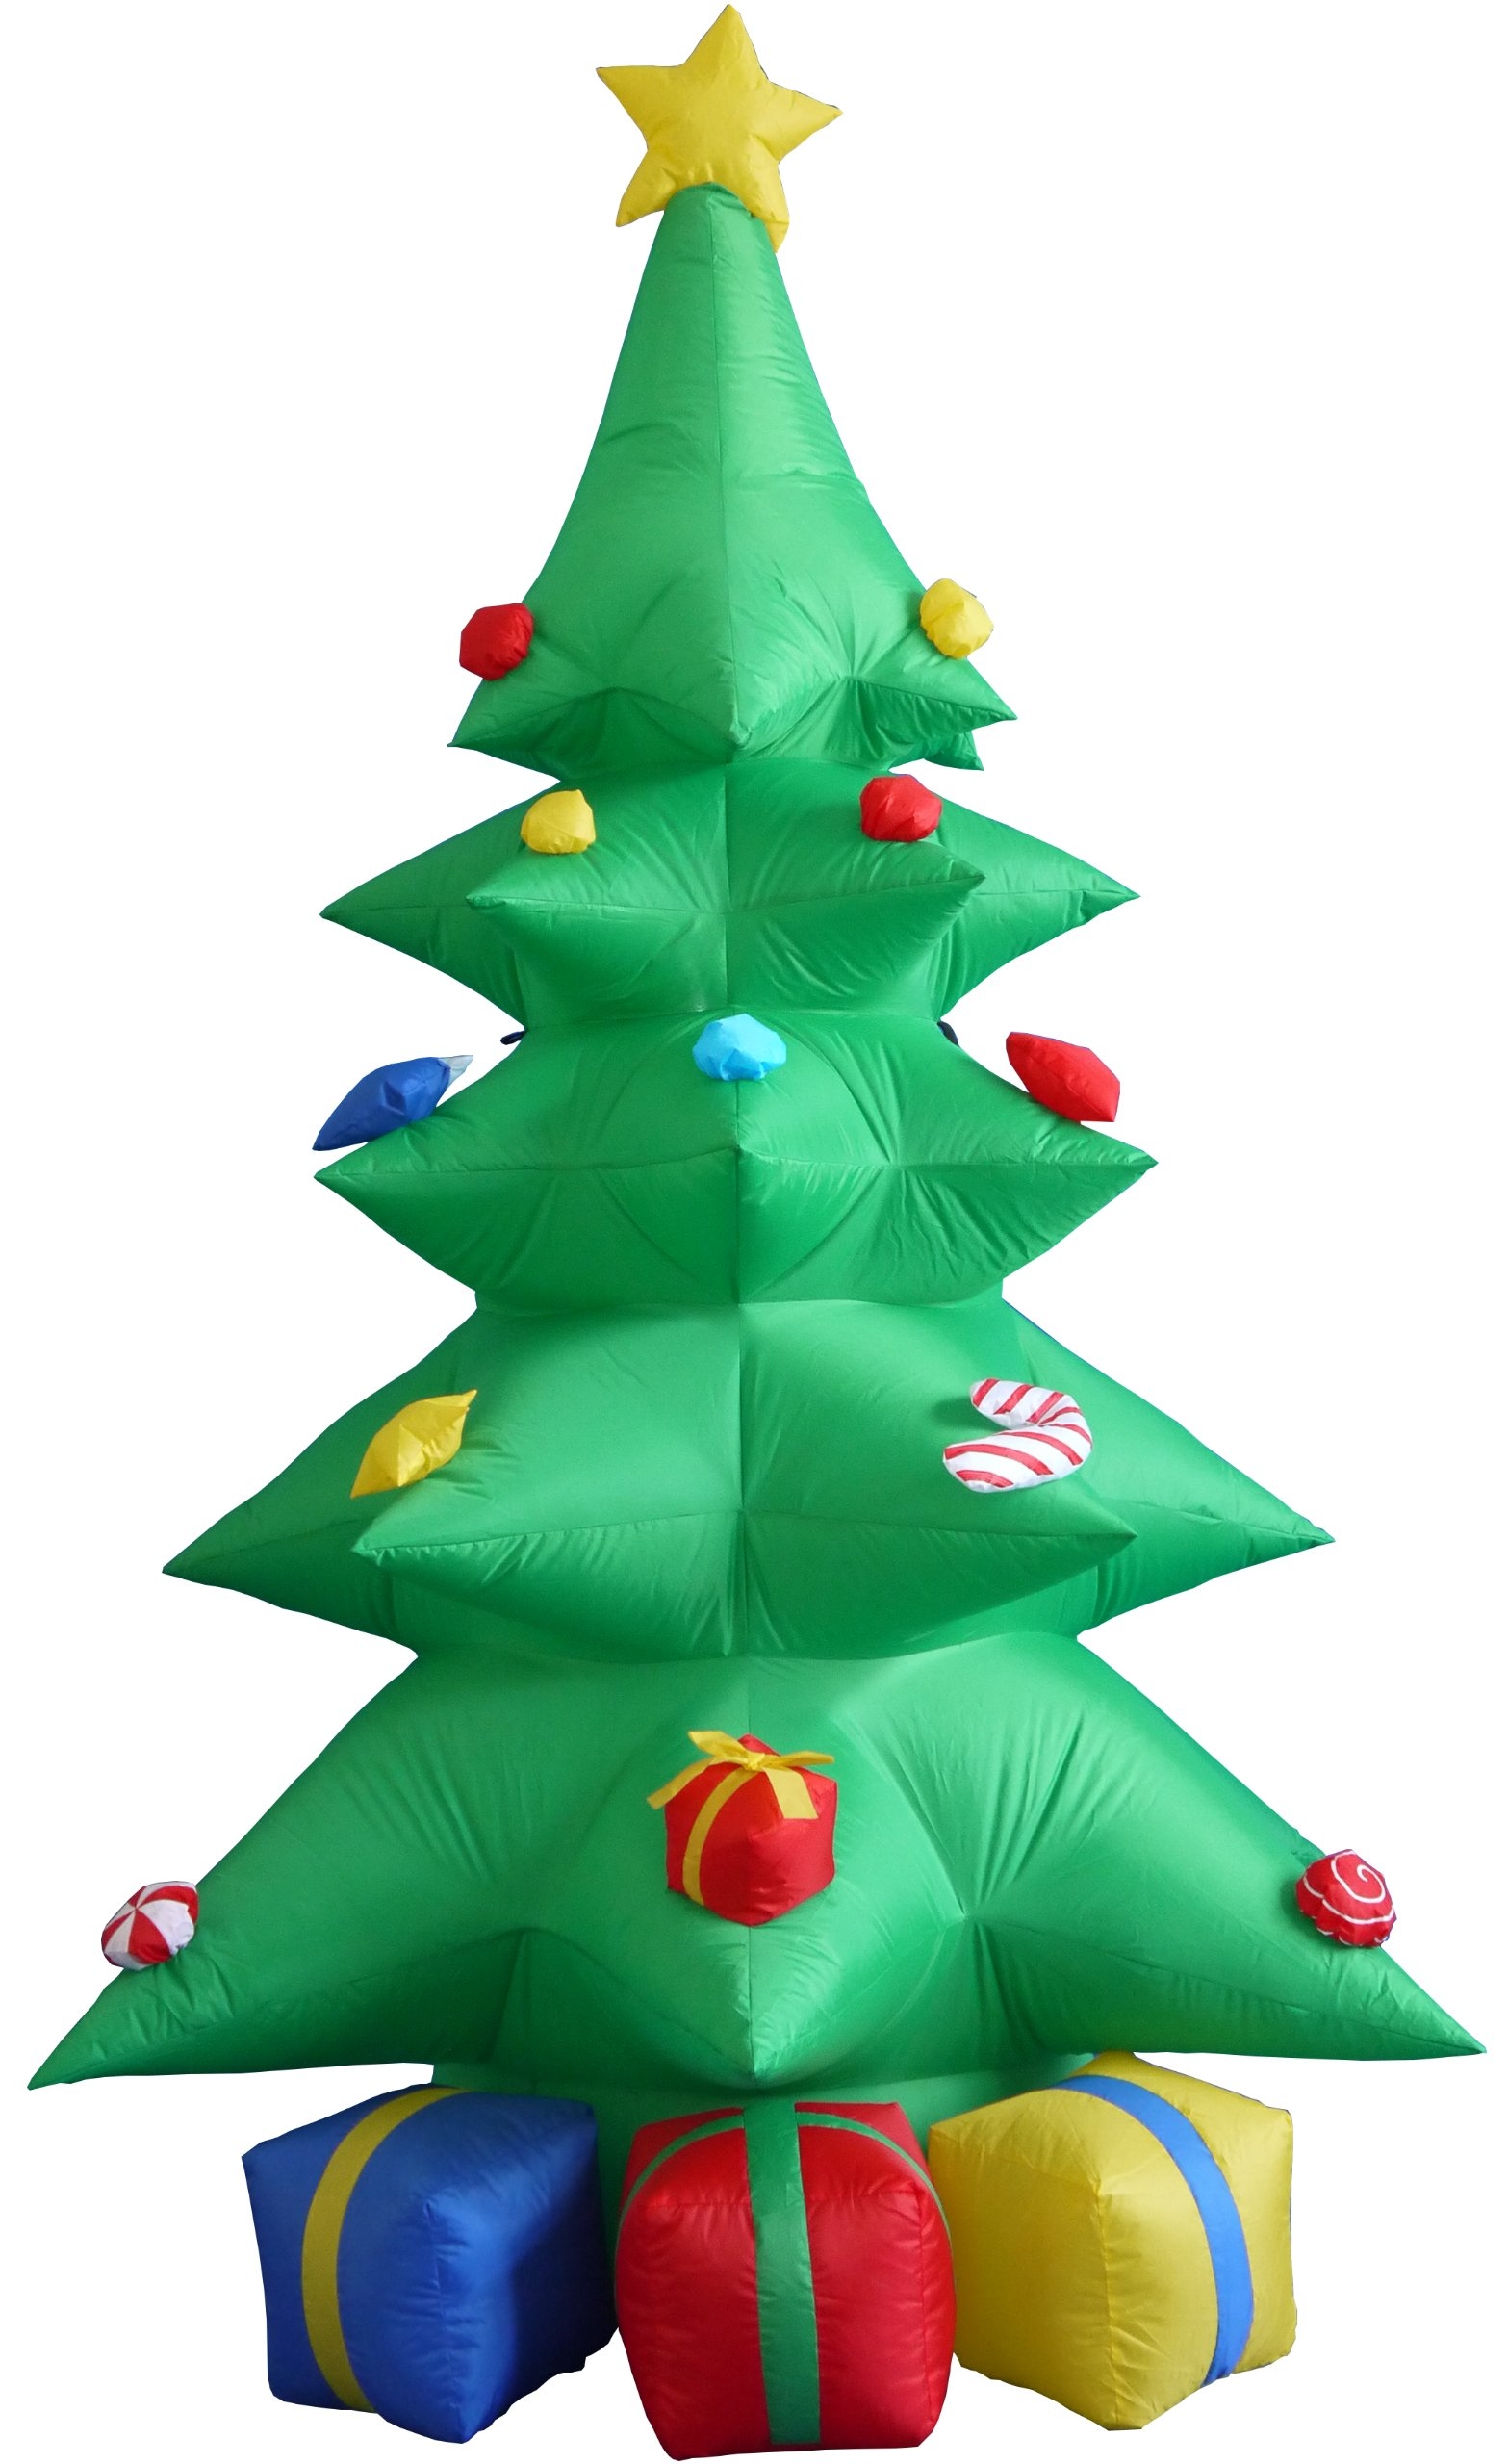 Inflatable Christmas Tree VisualHunt